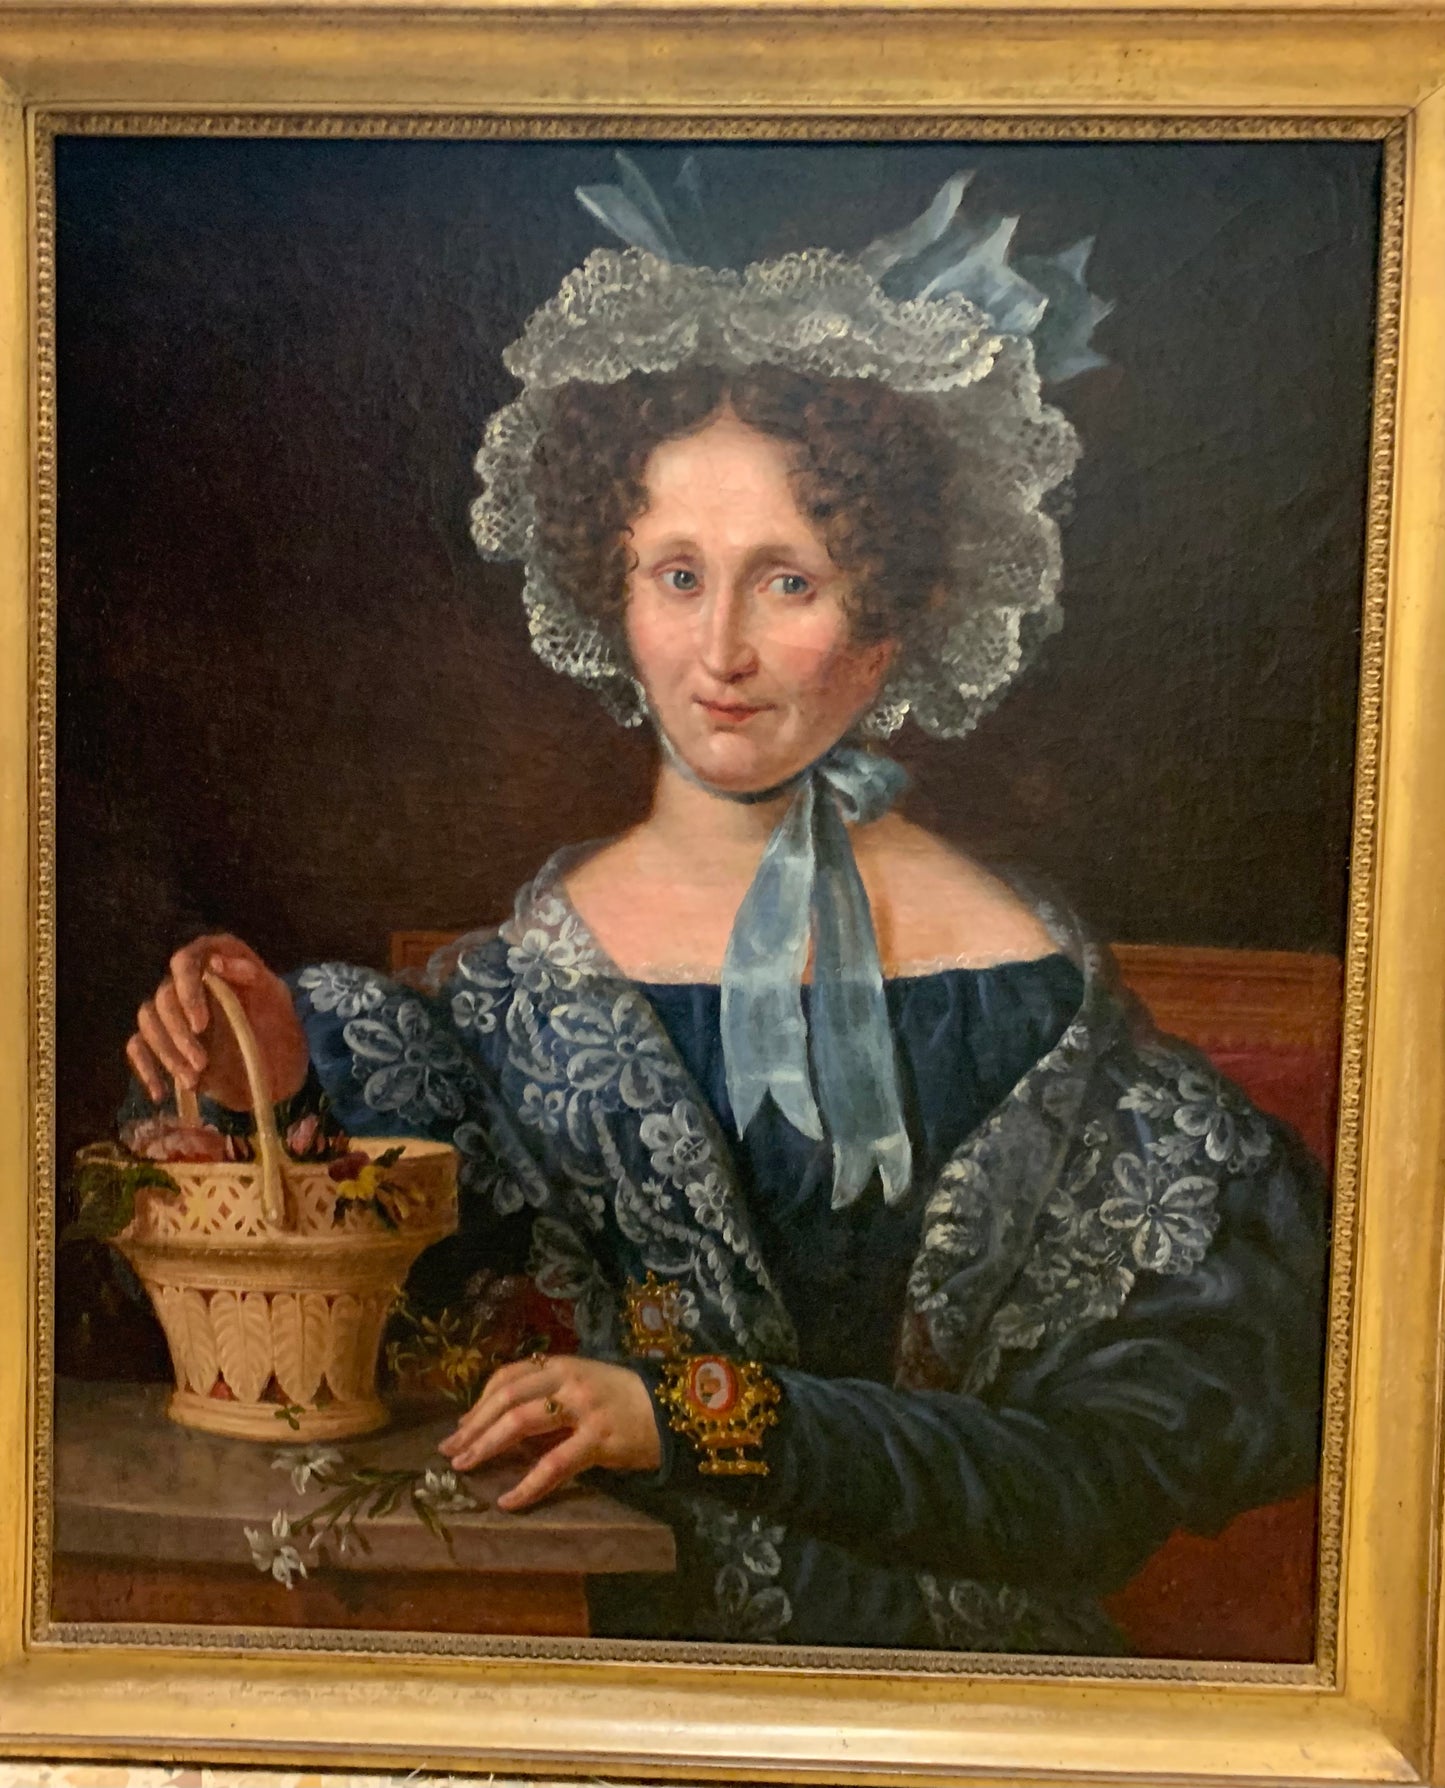 Portrait of Lady, 1830 era, portrait with micromosaic jewelry.